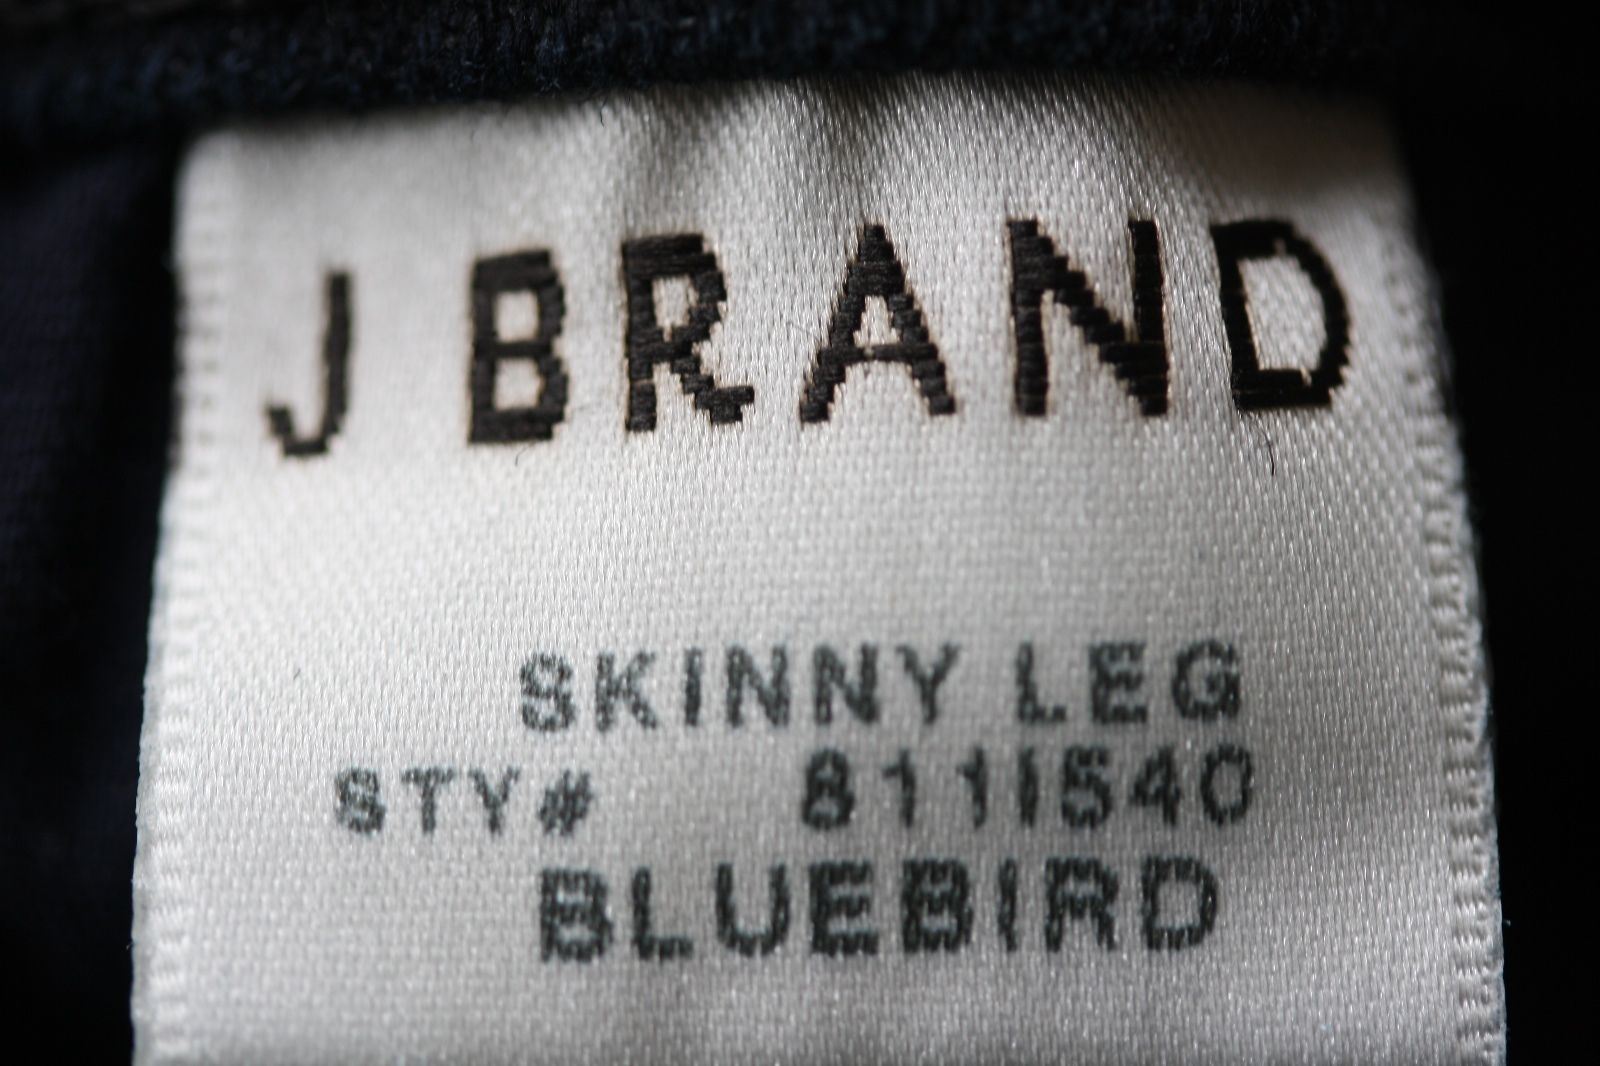 J BRAND SKINNY LEG STRETCH JEANS IN BLUEBIRD W25 UK 6/8